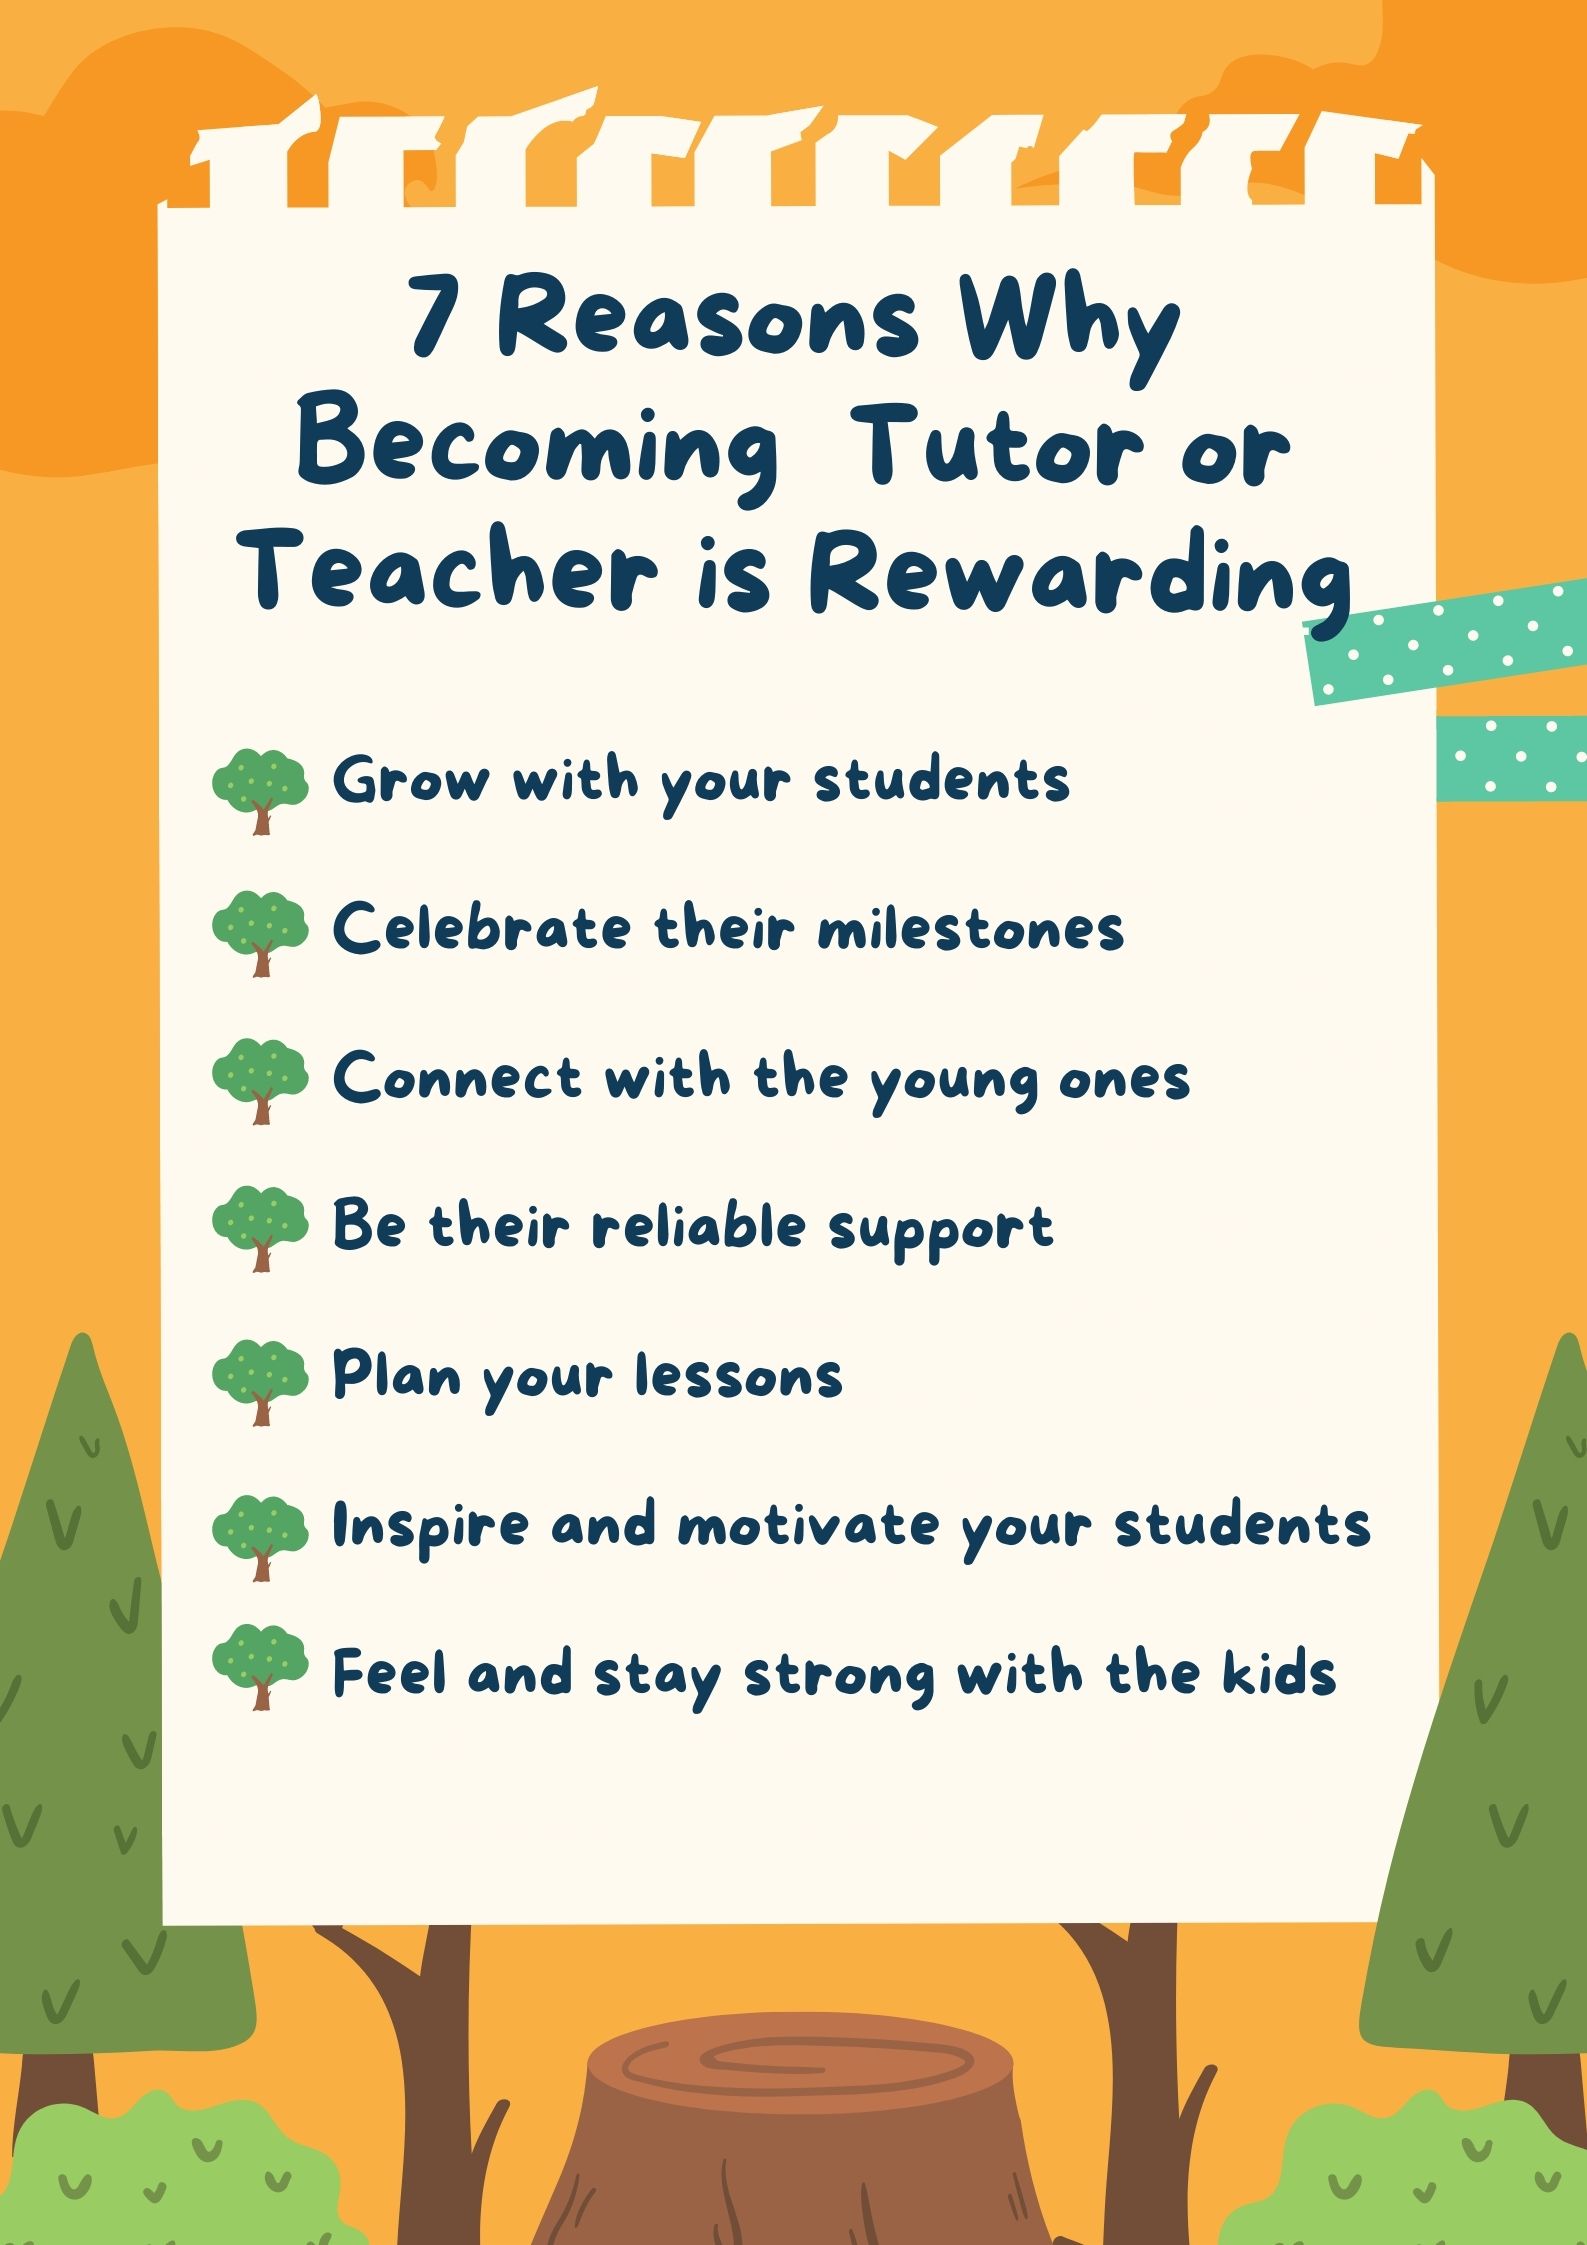 become a tutor